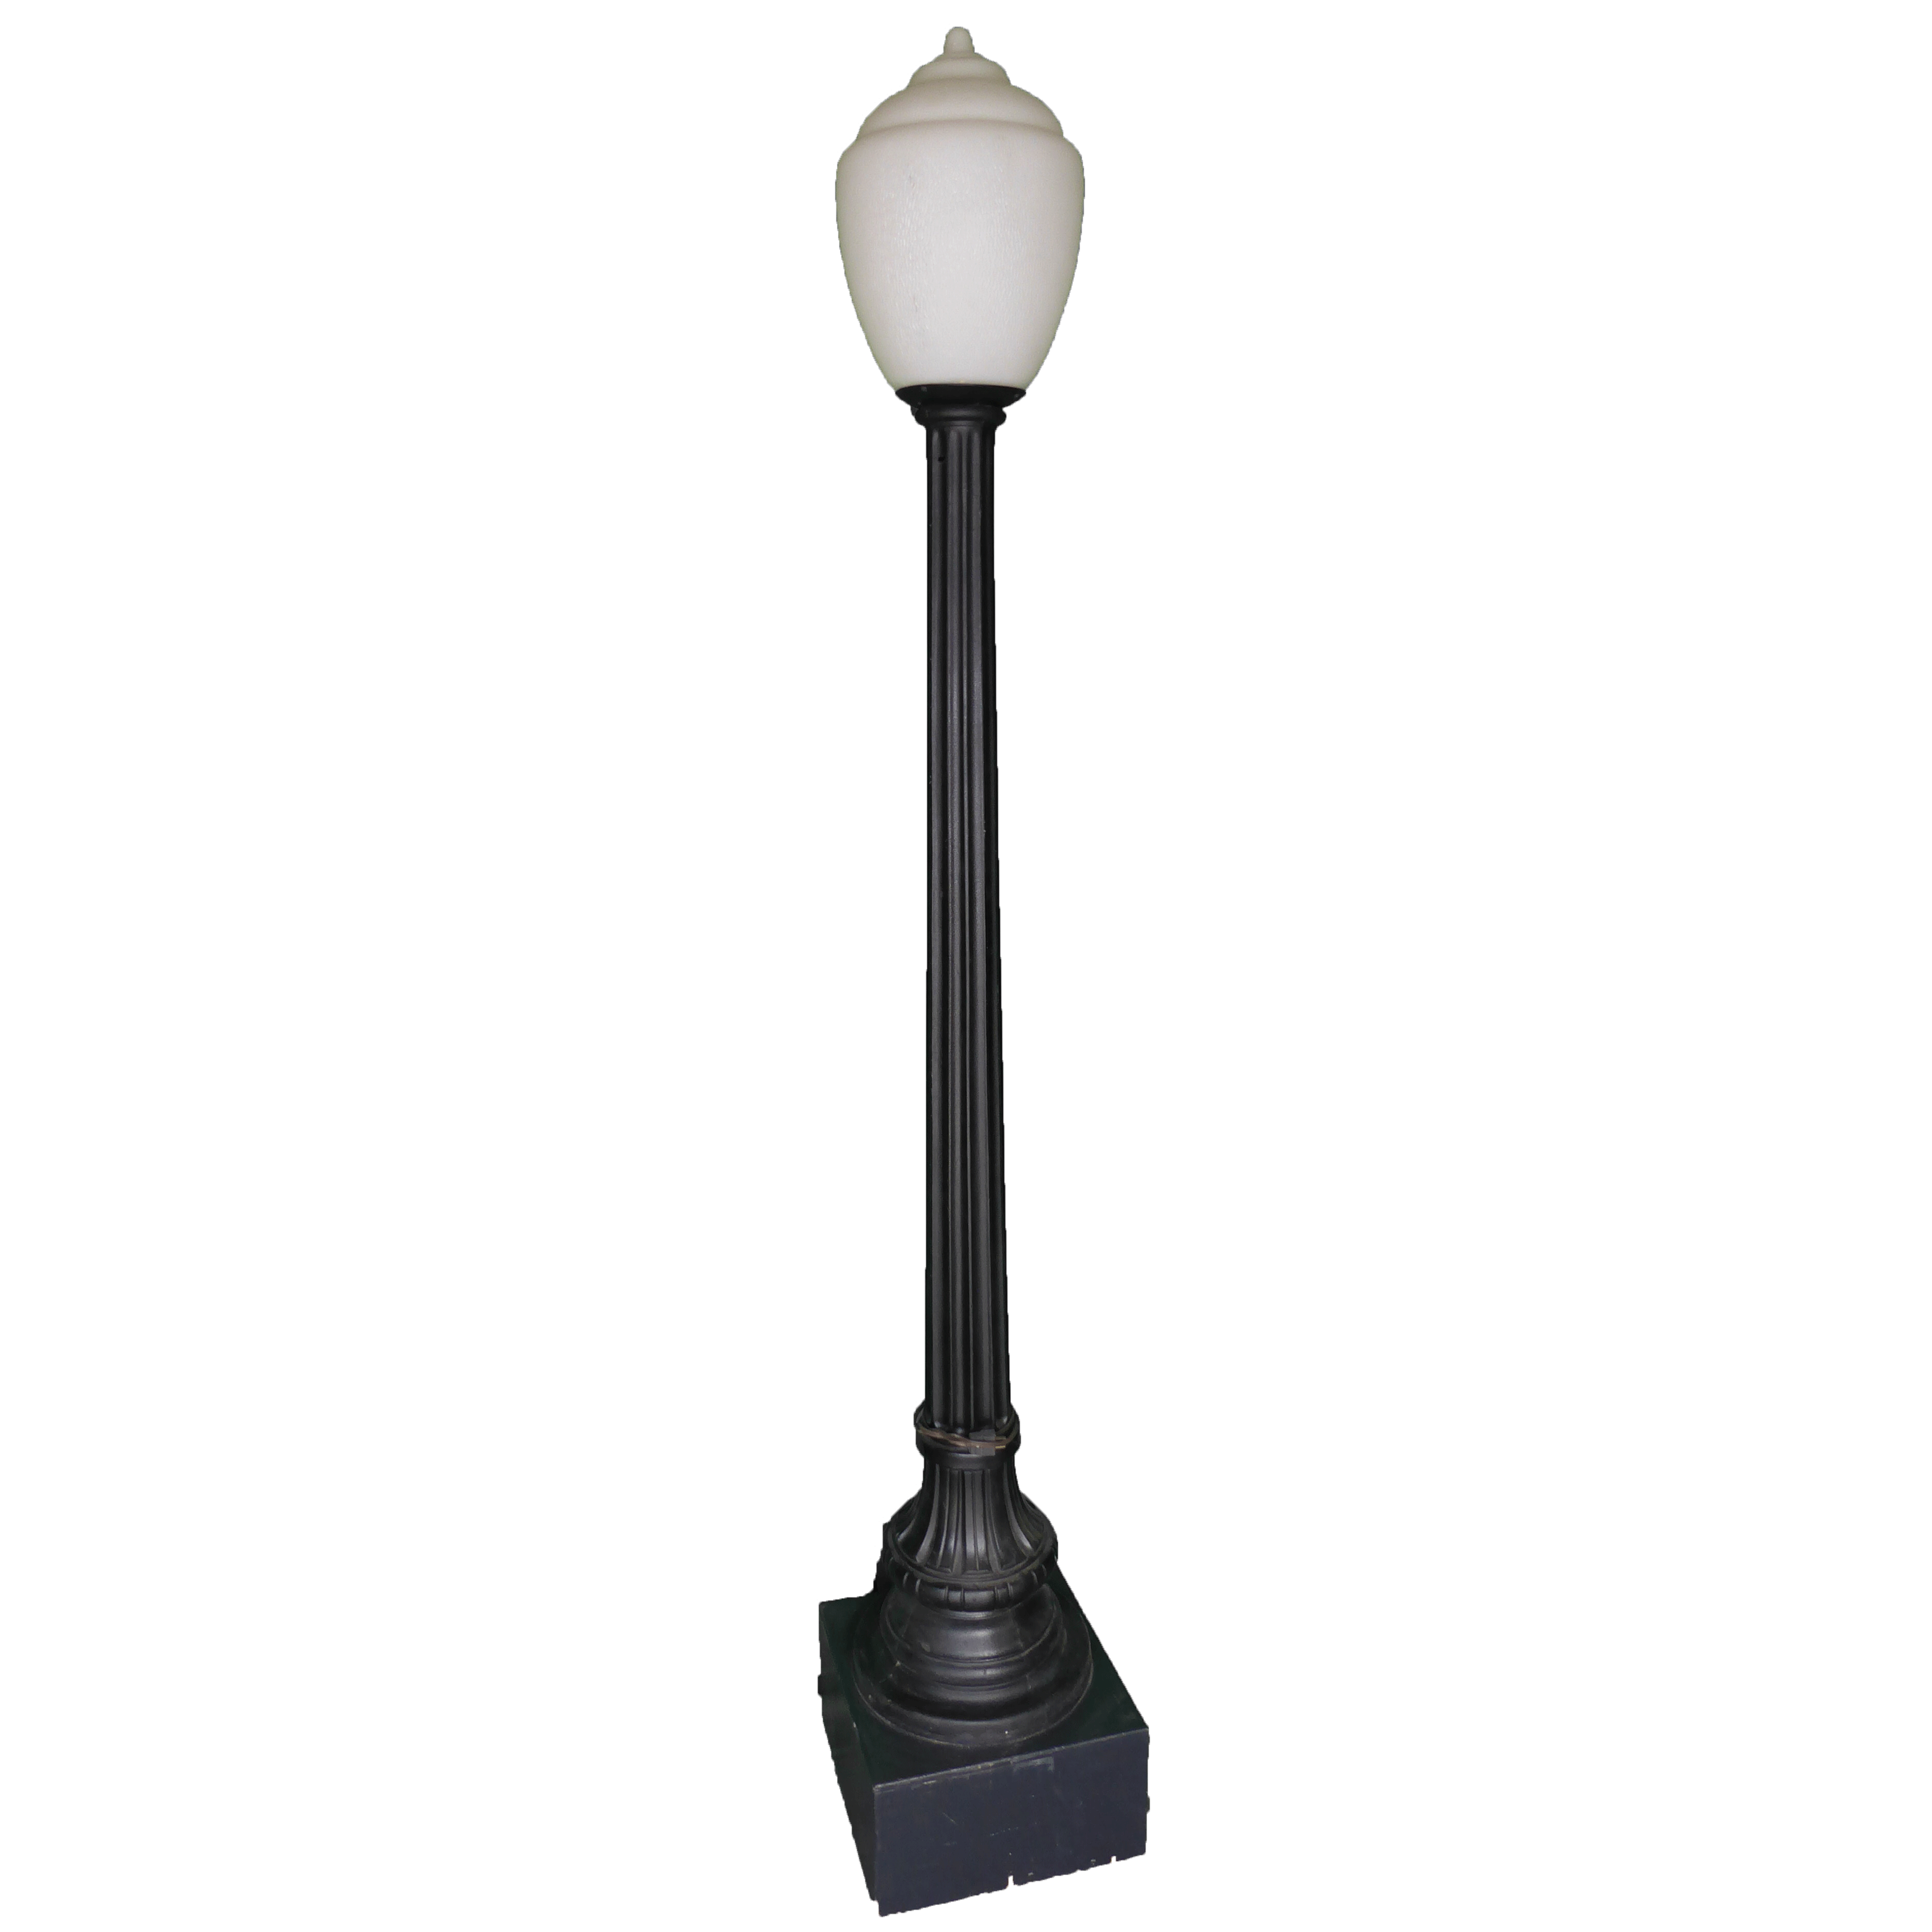 Lamp Post Prop